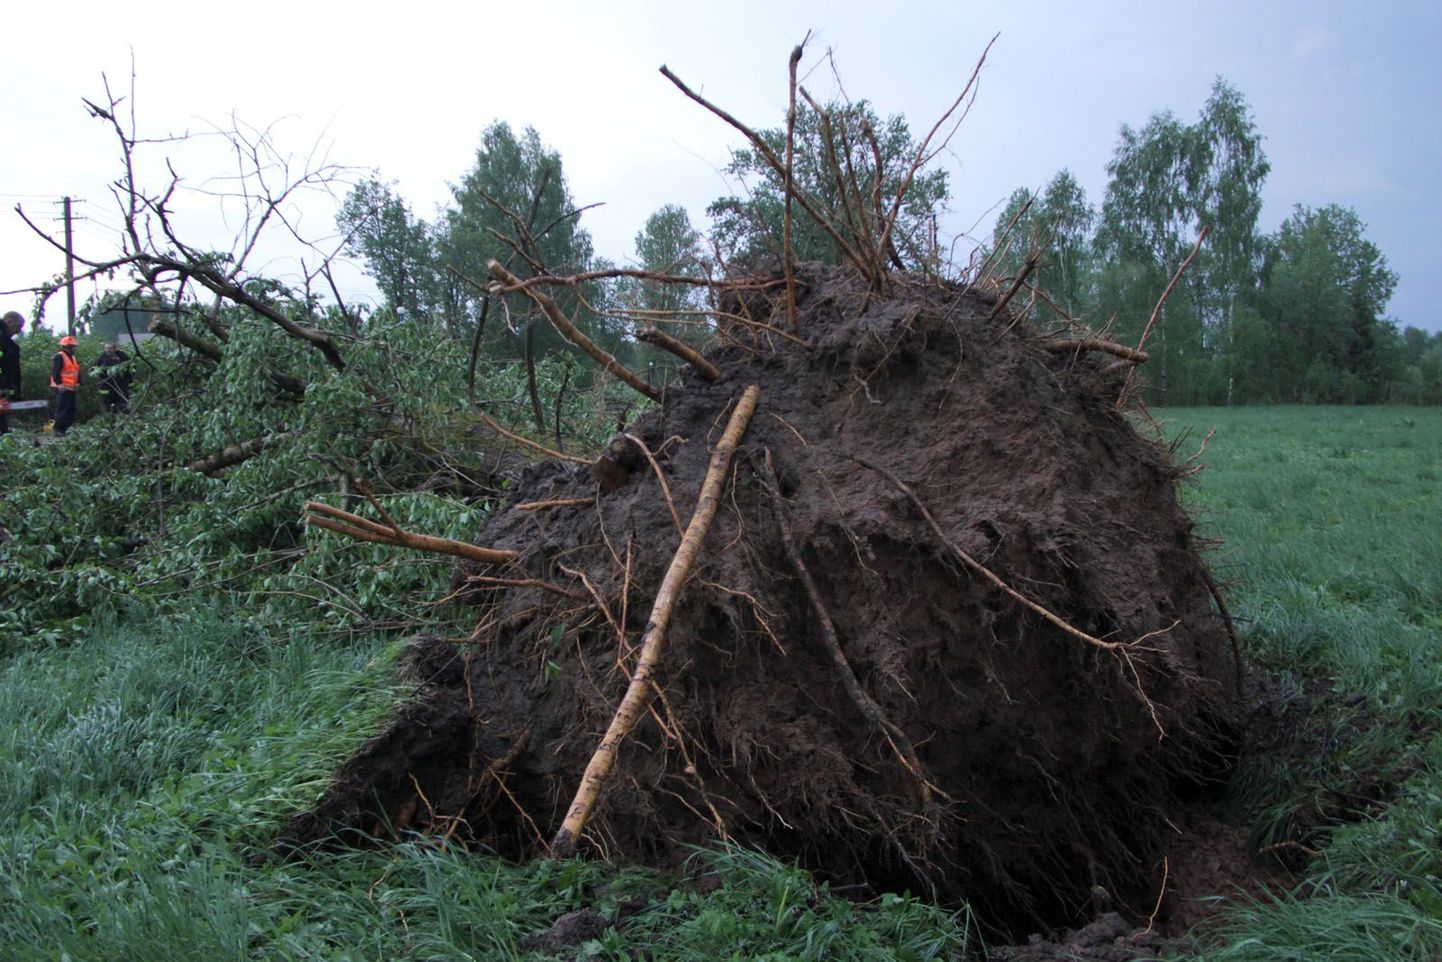 Liiklejaid võivad ohustada ka tuule tõttu murduvad või juurtega maast välja kistavad puud. Foto on illustratiivne.